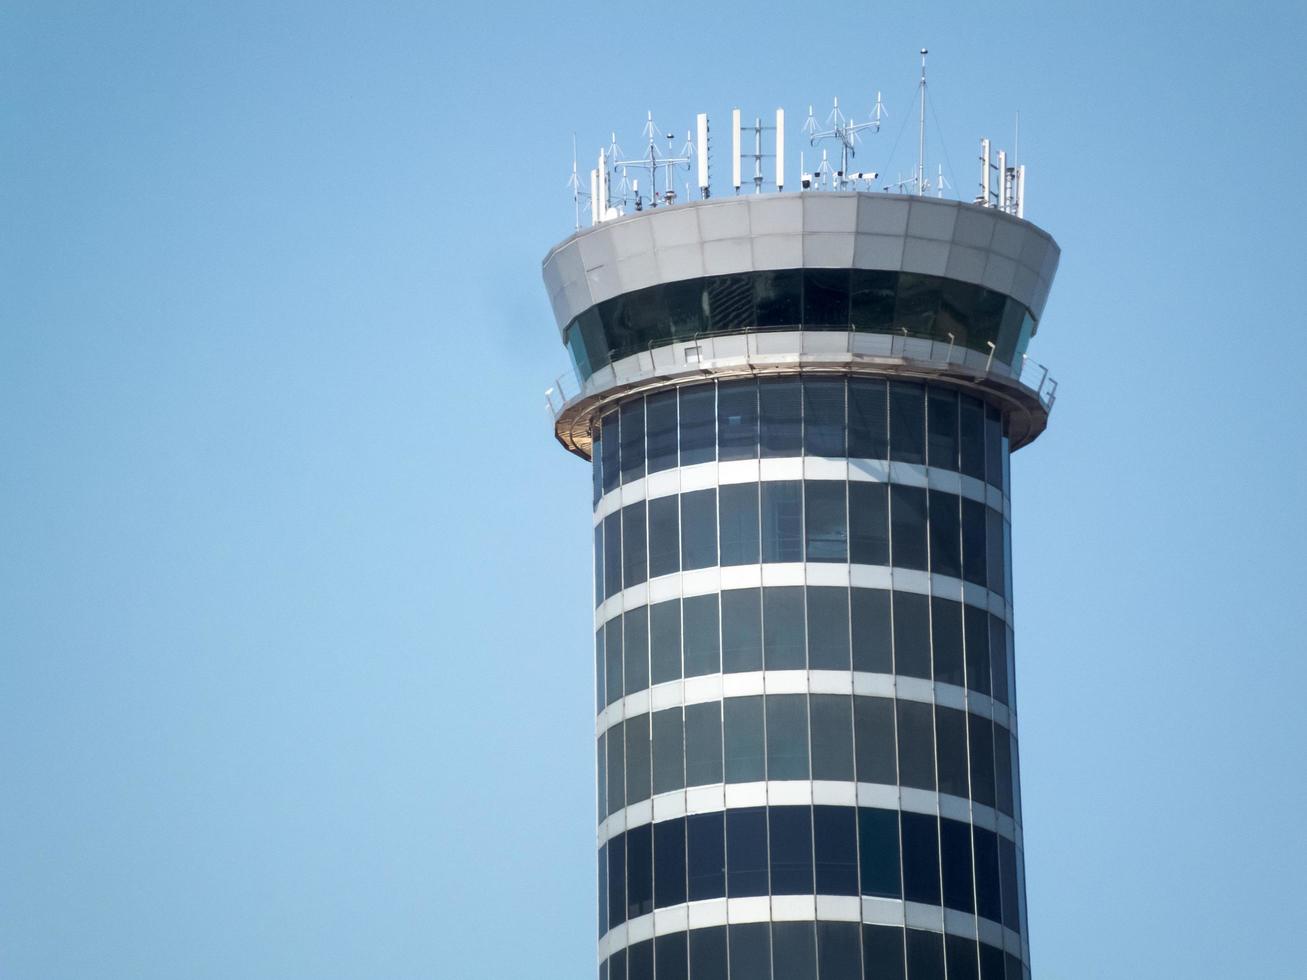 suvarnabhumi bangkok thailand31. oktober 2018 der flughafen suvarnabhumi hat den control tower the world'1 highrise tower 132,2 m und das drittgrößte passagierterminal der welt. auf bangkok thailand31 foto